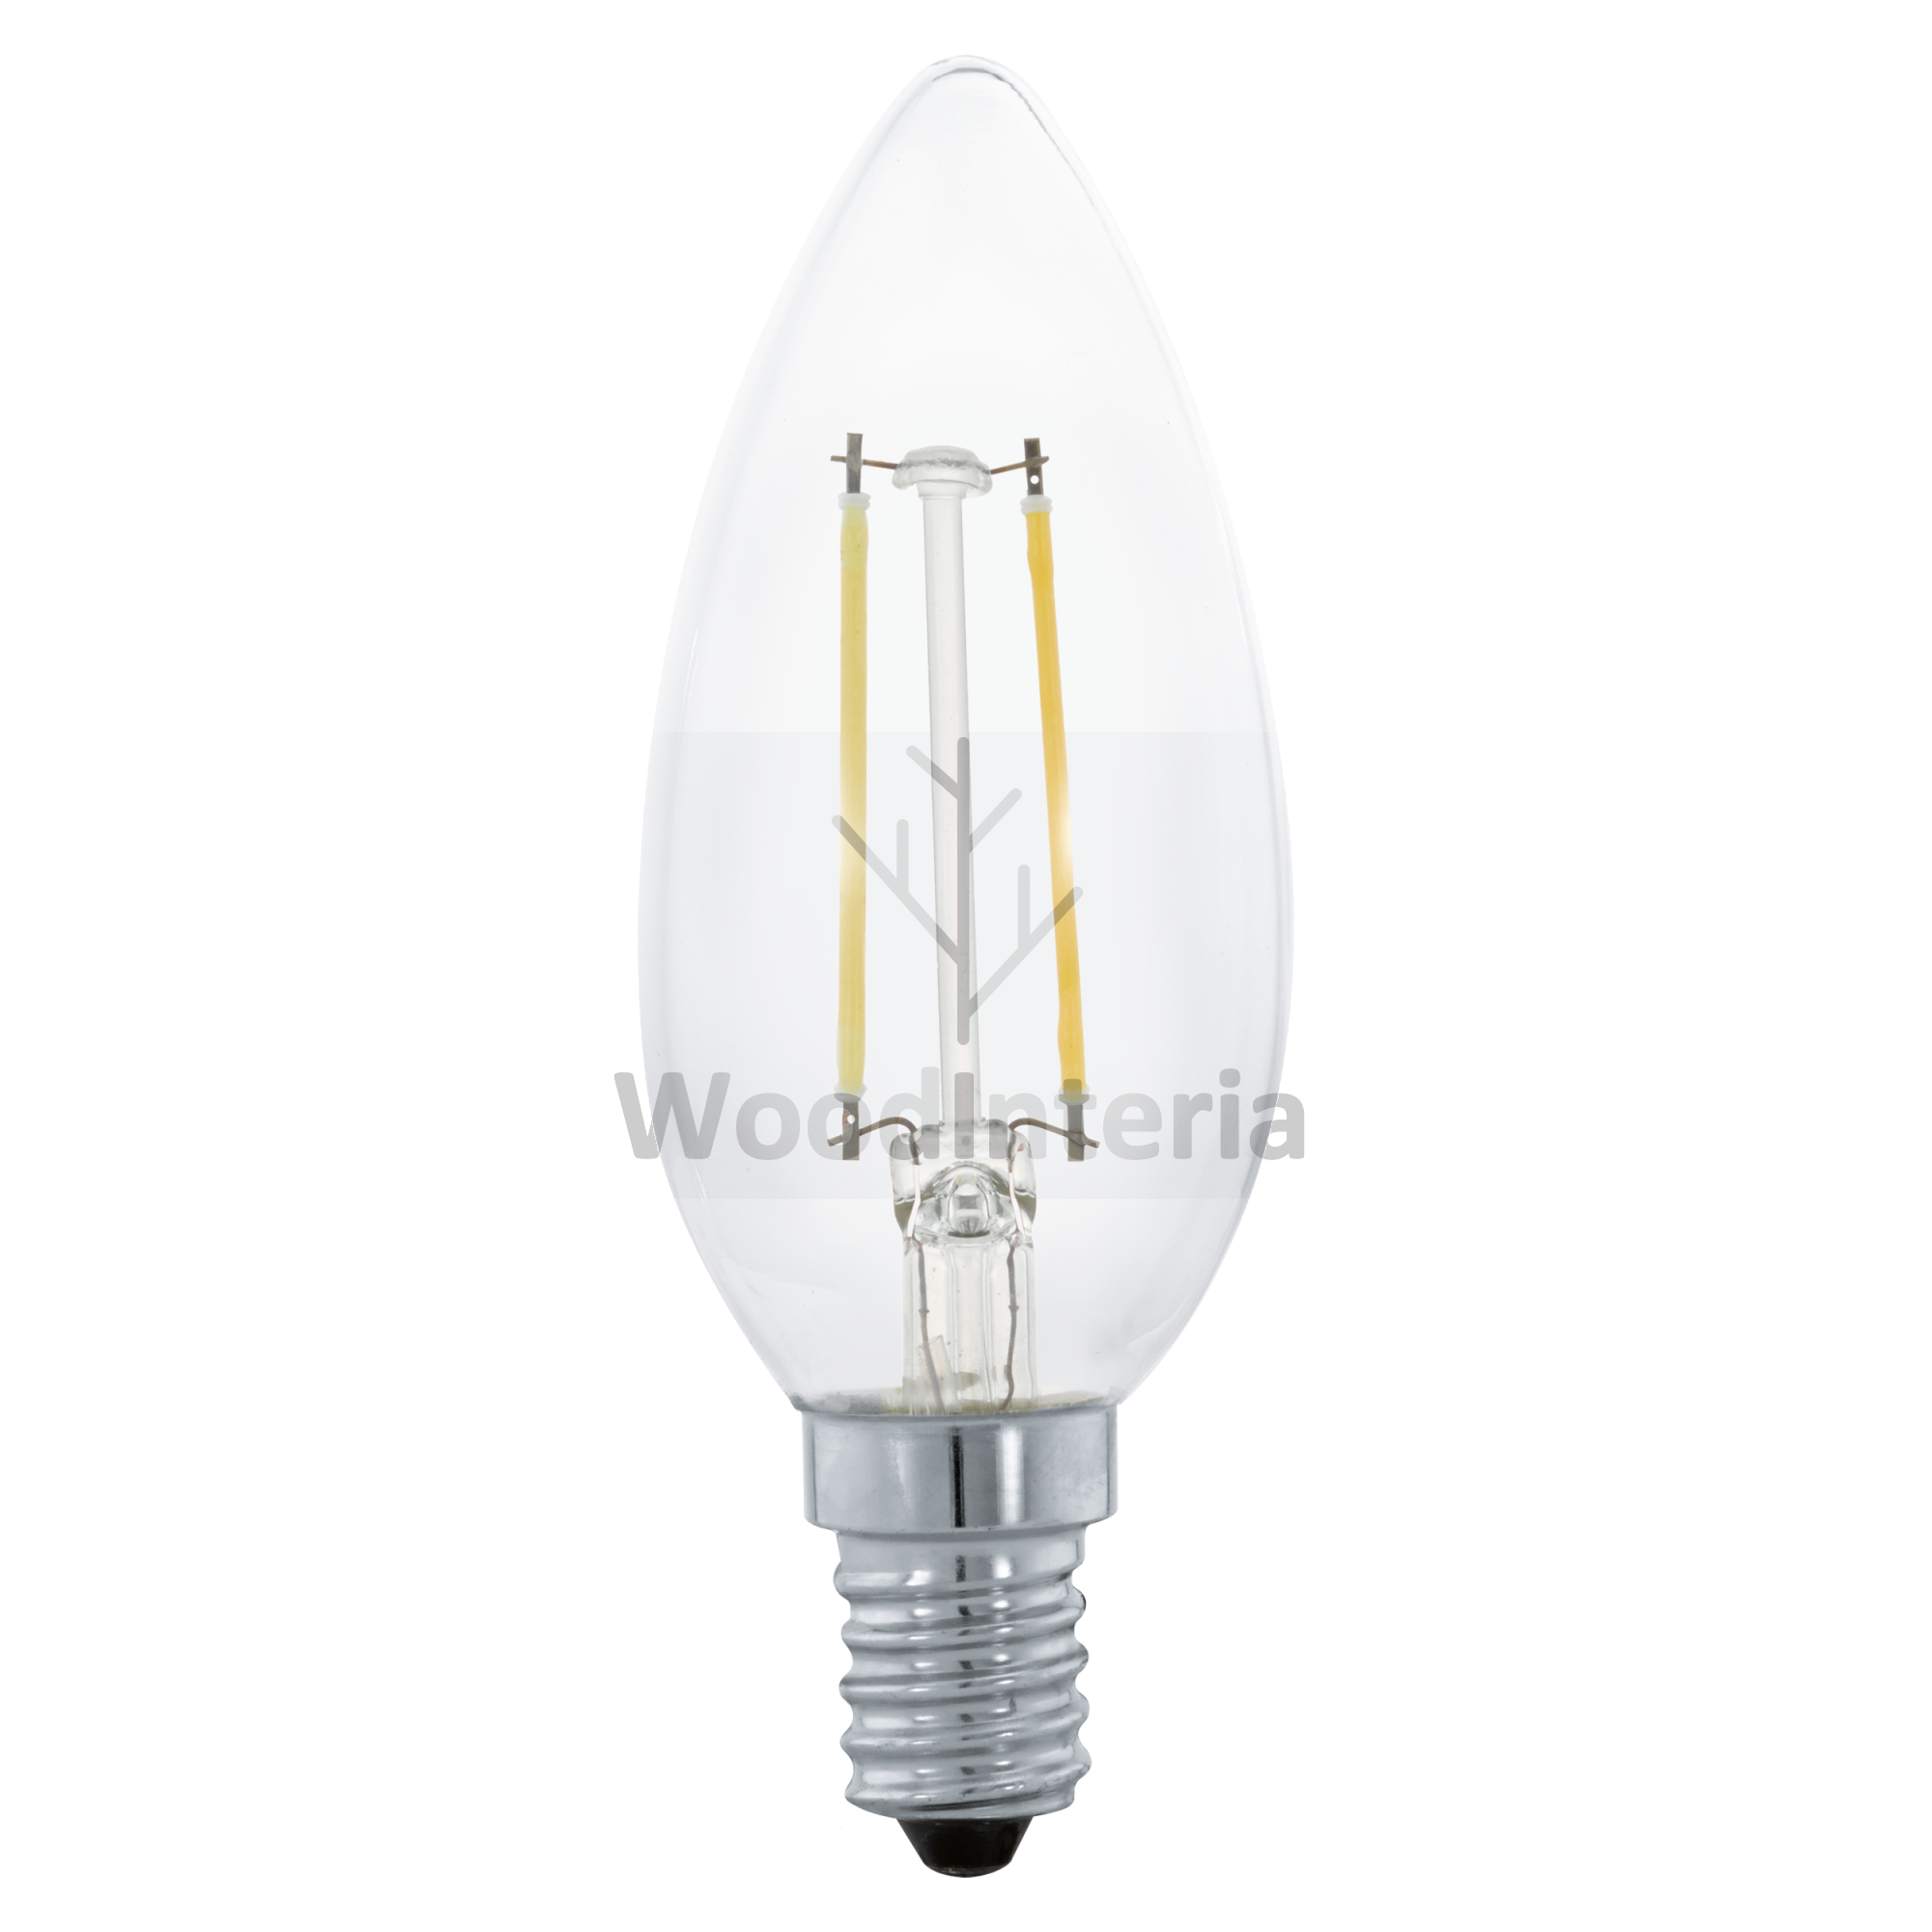 фото лампочка clean bulb #7 в скандинавском интерьере лофт эко | WoodInteria